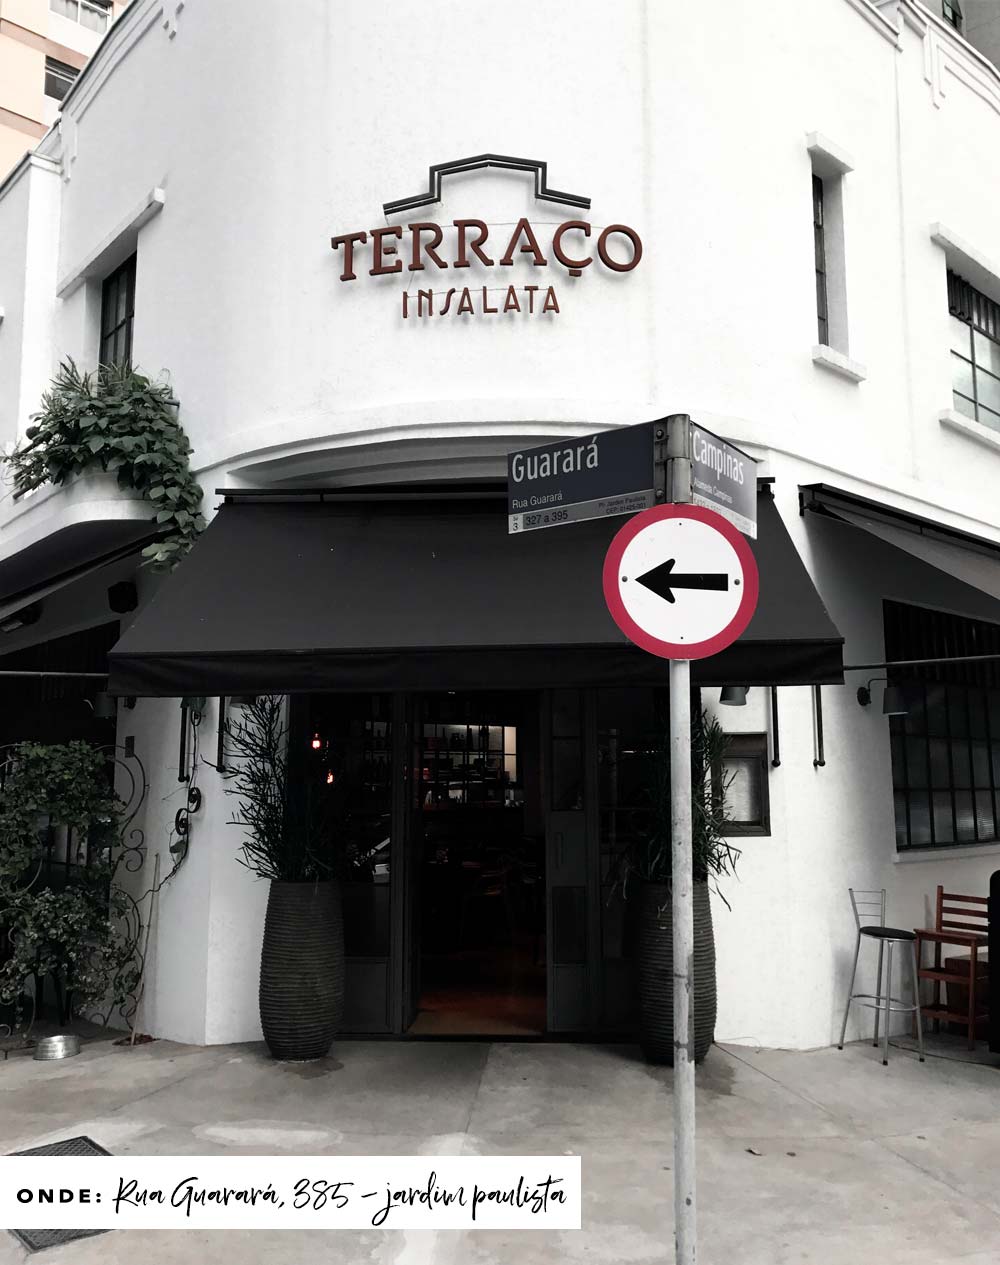 Fachada do restaurante Terraço Insalata em São Paulo.